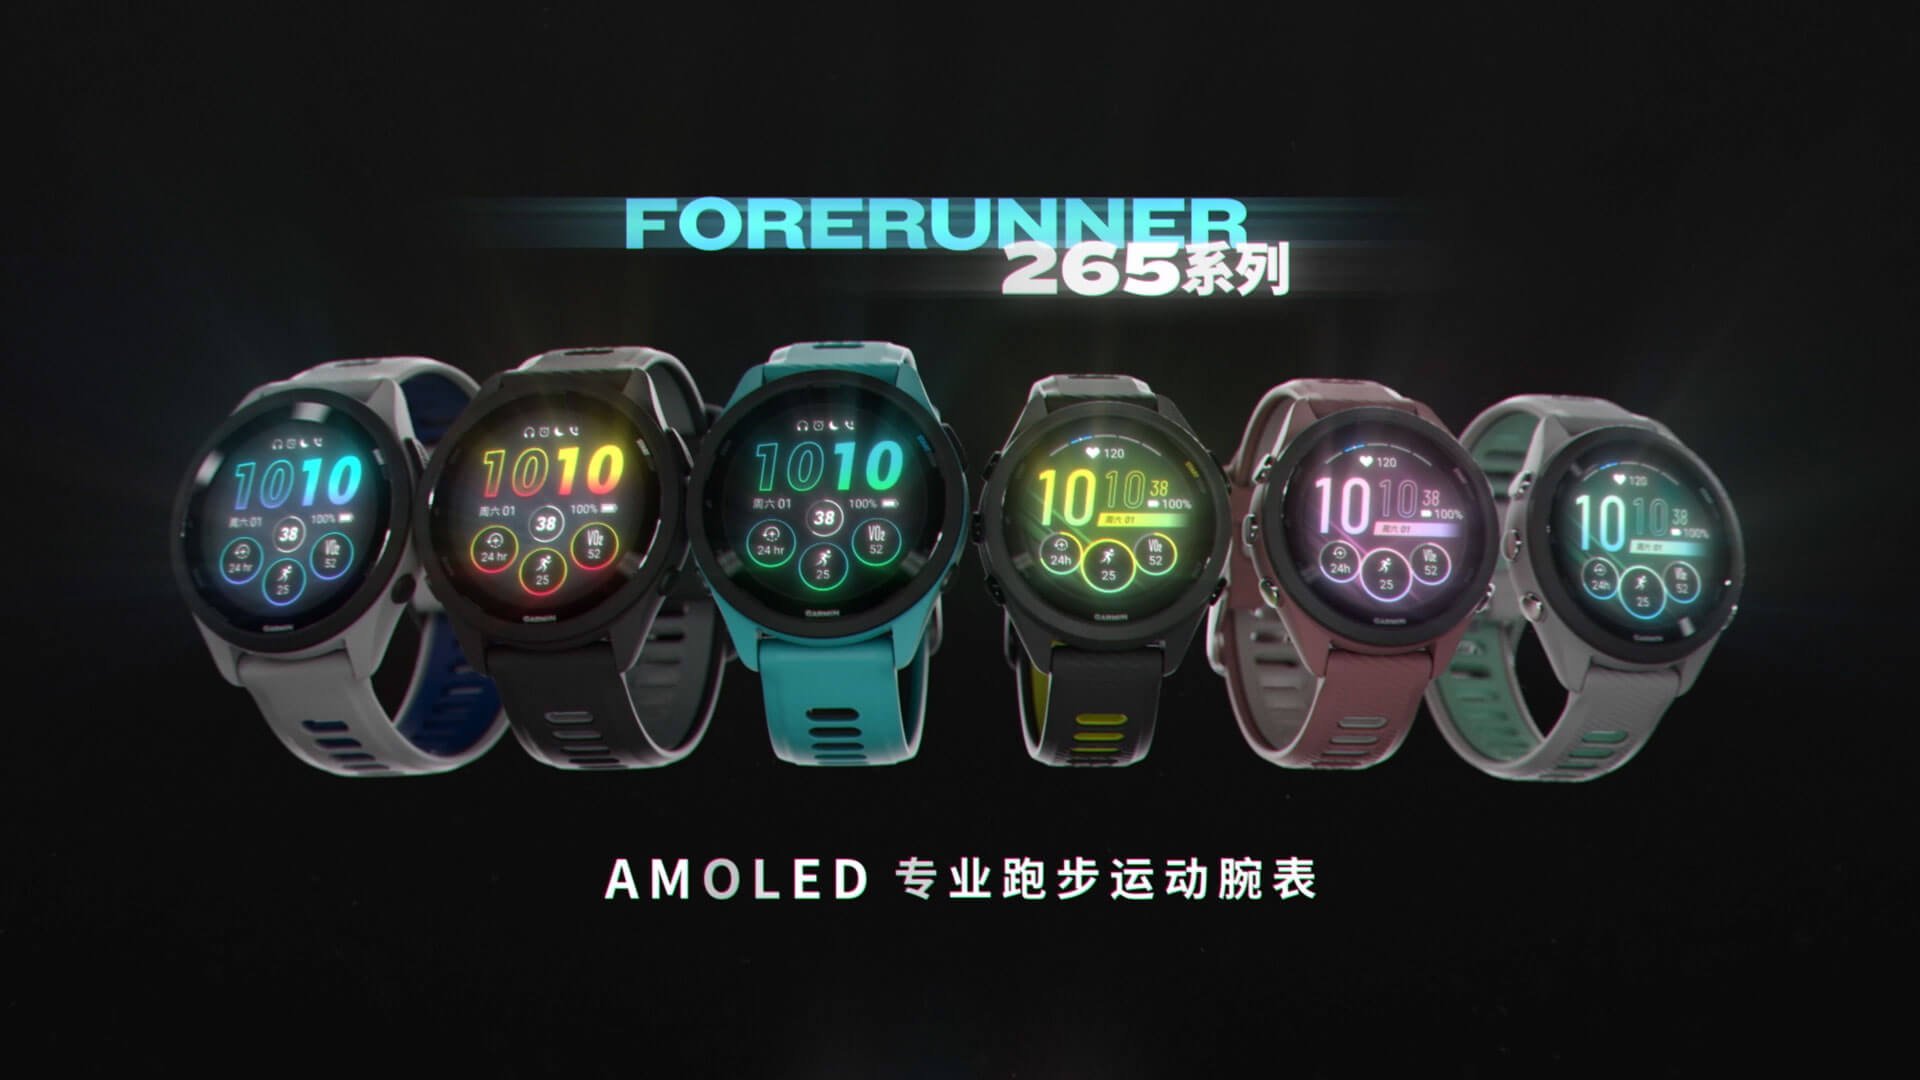 AMOLED专业跑步运动手表 - Forerunner 265